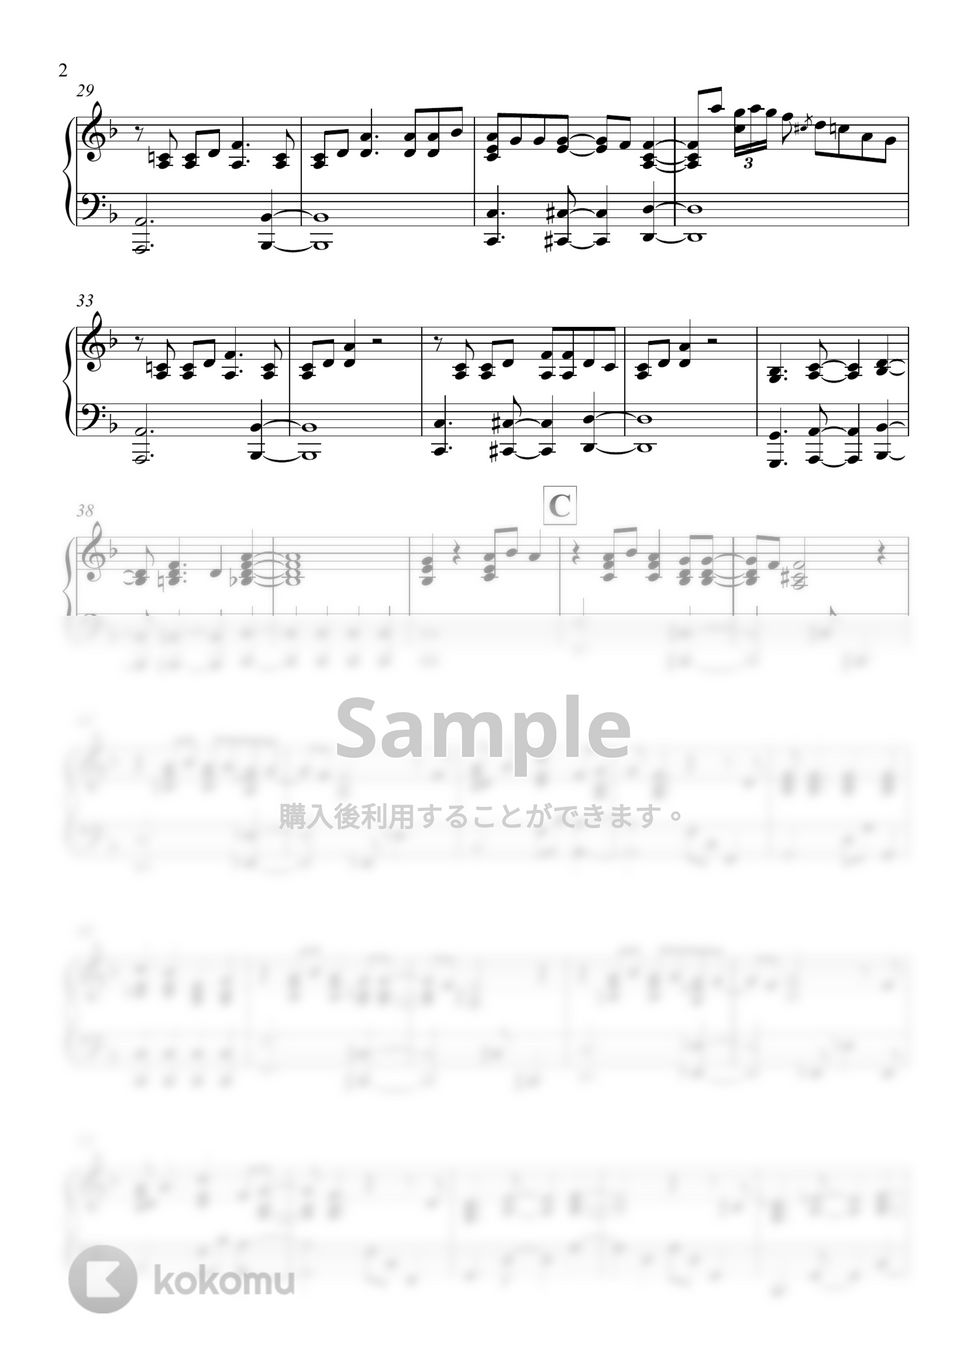 Official髭男dism - 宿命 (ピアノソロ) by applekeyz